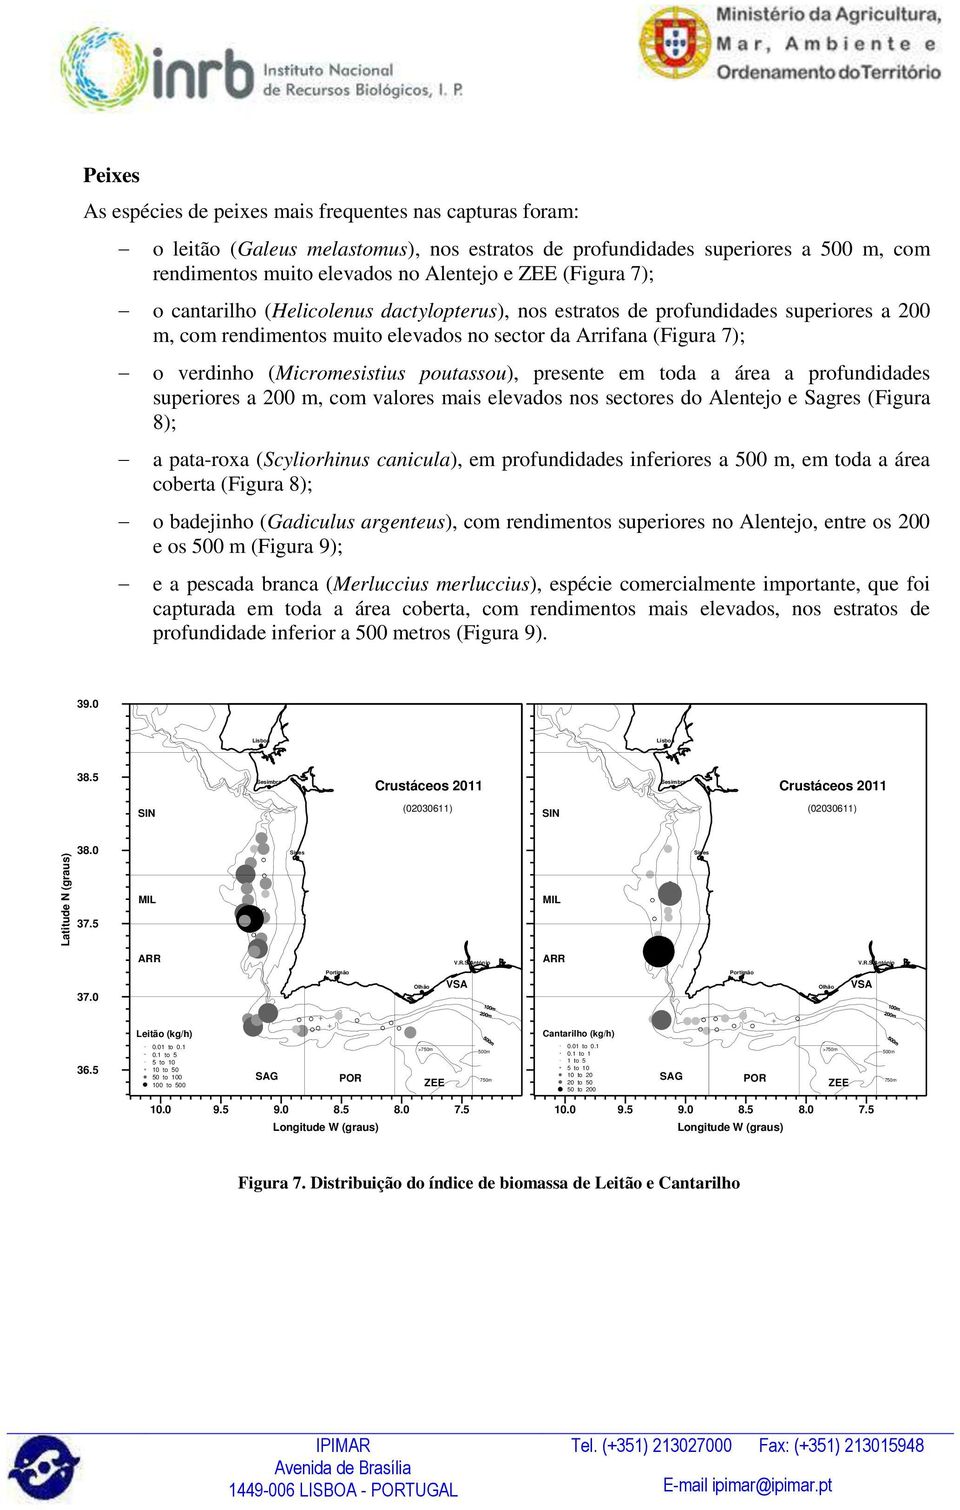 7); o verdinho (Micromesistius poutassou), presente em toda a área a profundidades superiores a 200 m, com valores mais elevados nos sectores do Alentejo e Sagres (Figura 8); a pata-roxa